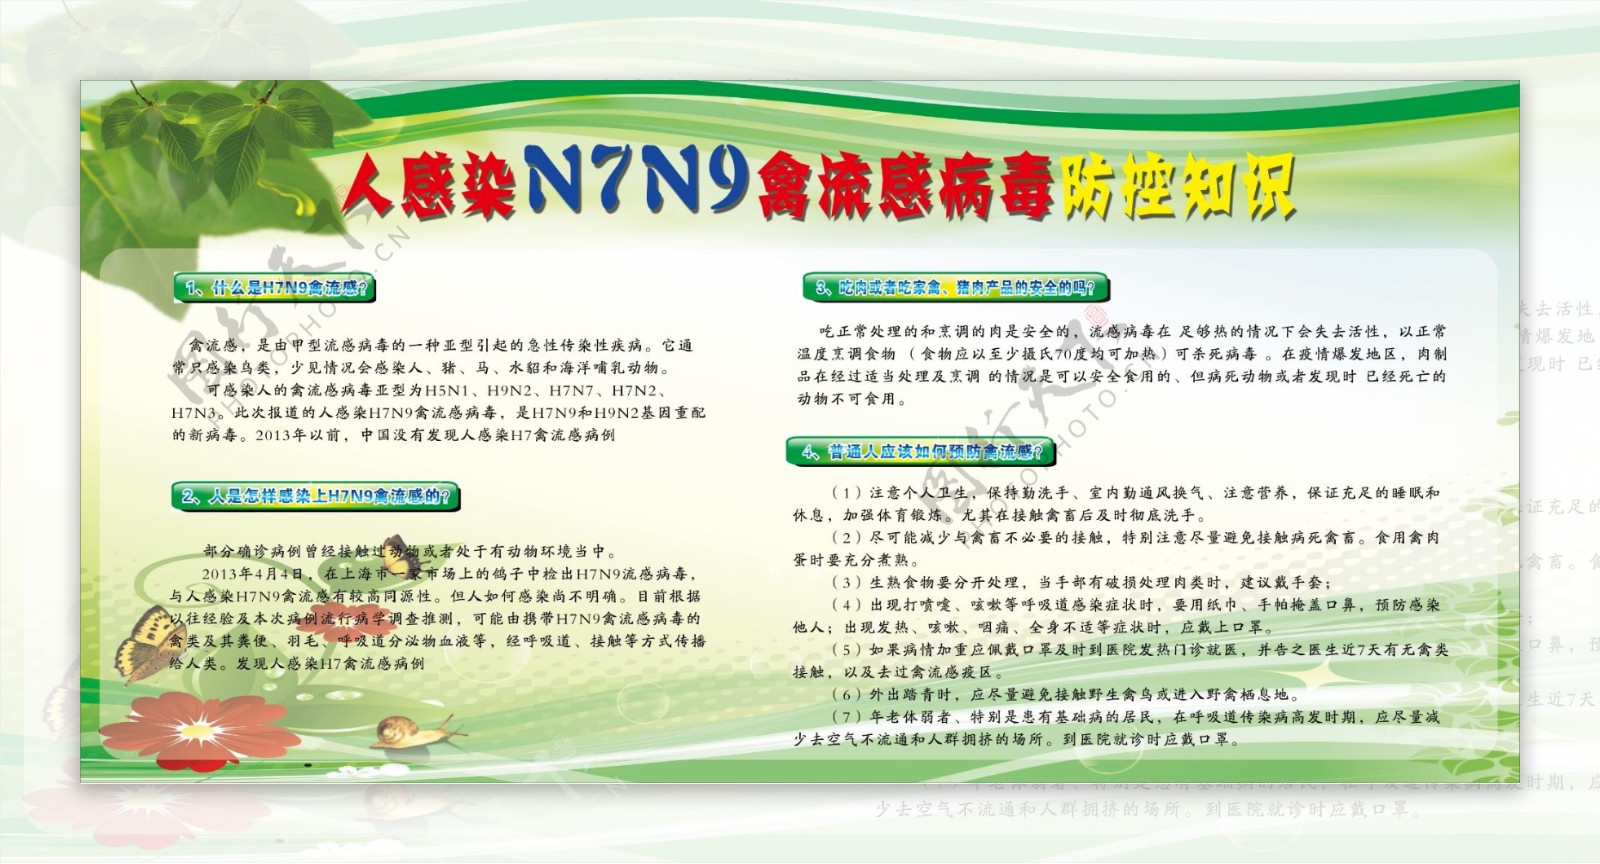 禽流感防控知识展板图片